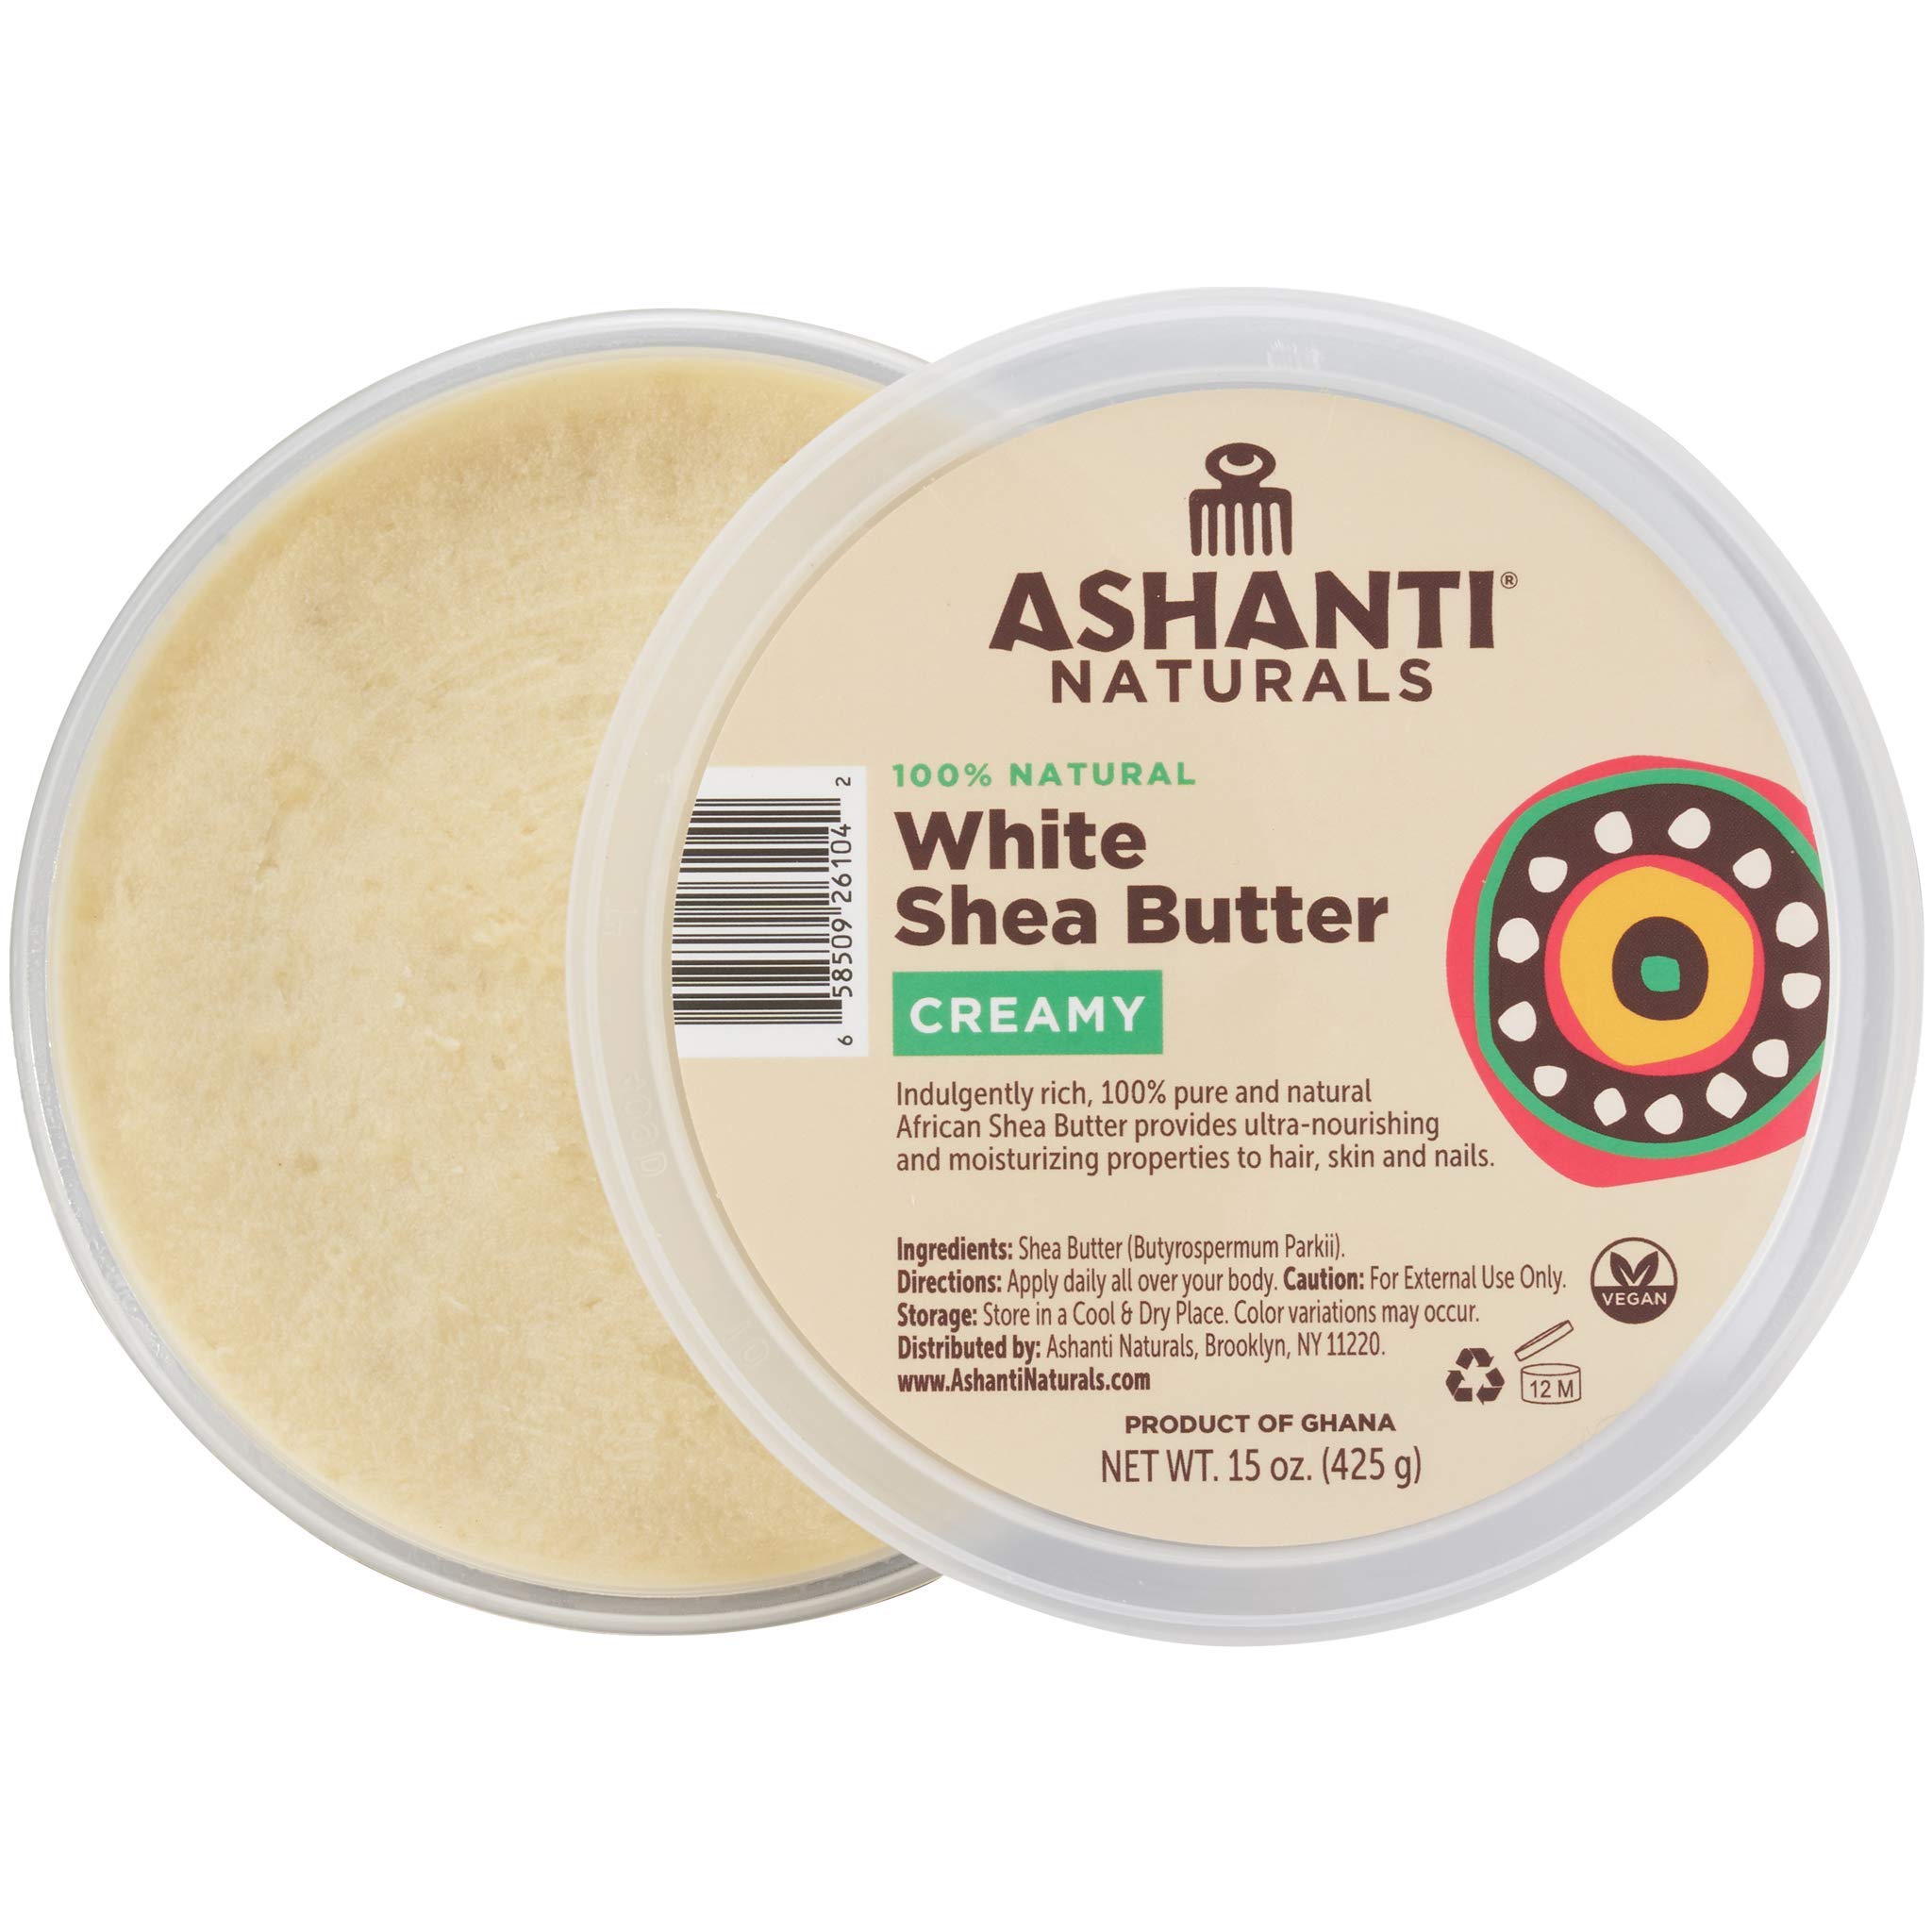 Ashanti Naturals Shea Butter, Creamy Unrefined Shea Butter Body  Moisturizers, Face Moisturizer for Women - African Shea